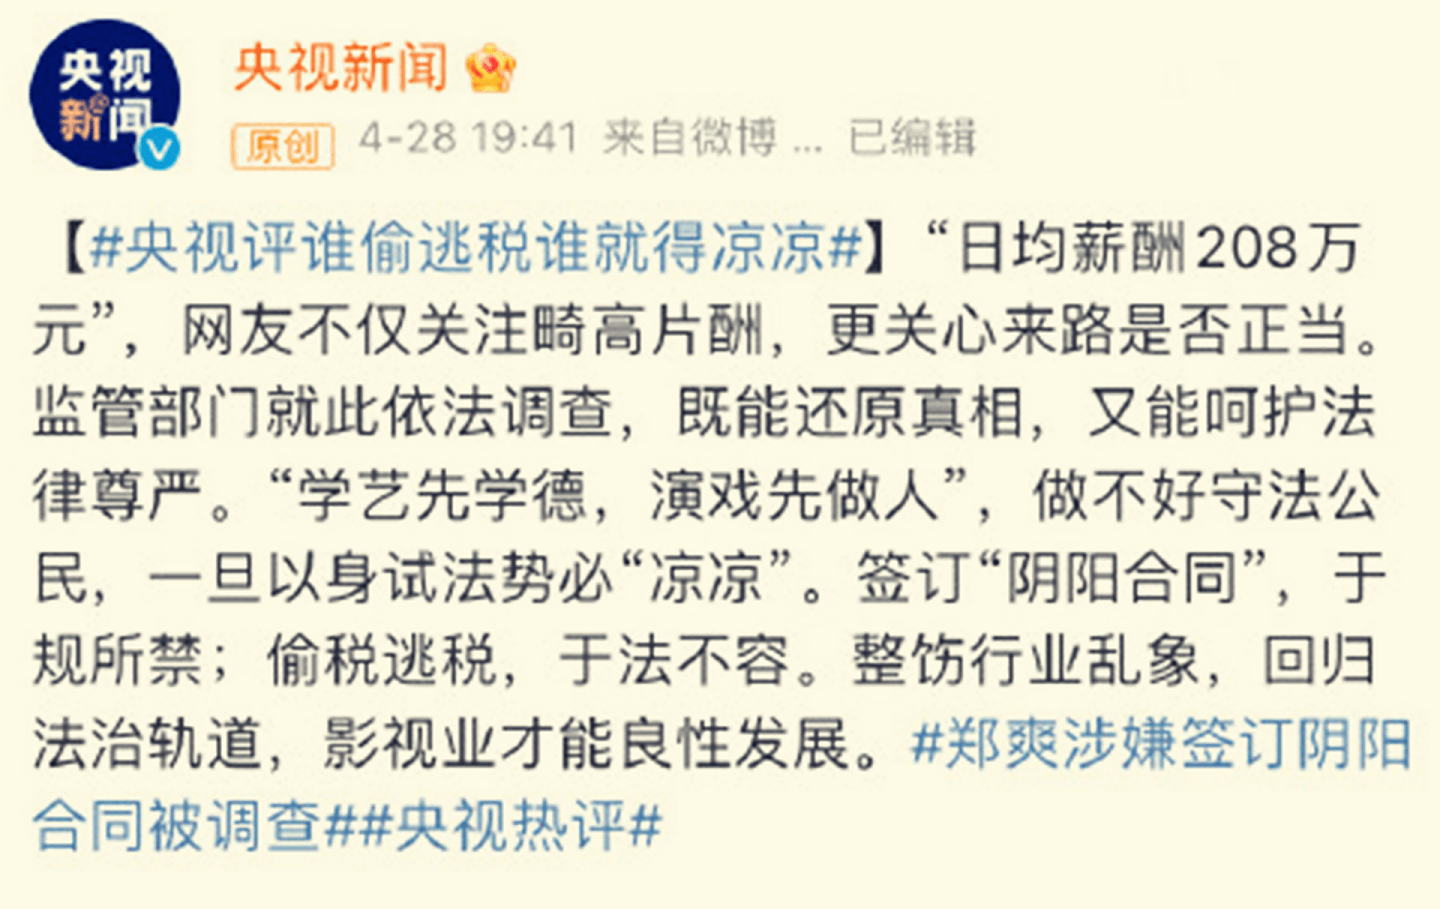 中国官媒央视新闻评论郑爽偷税漏税事件，称要让其“凉凉”。（微博@央视新闻）